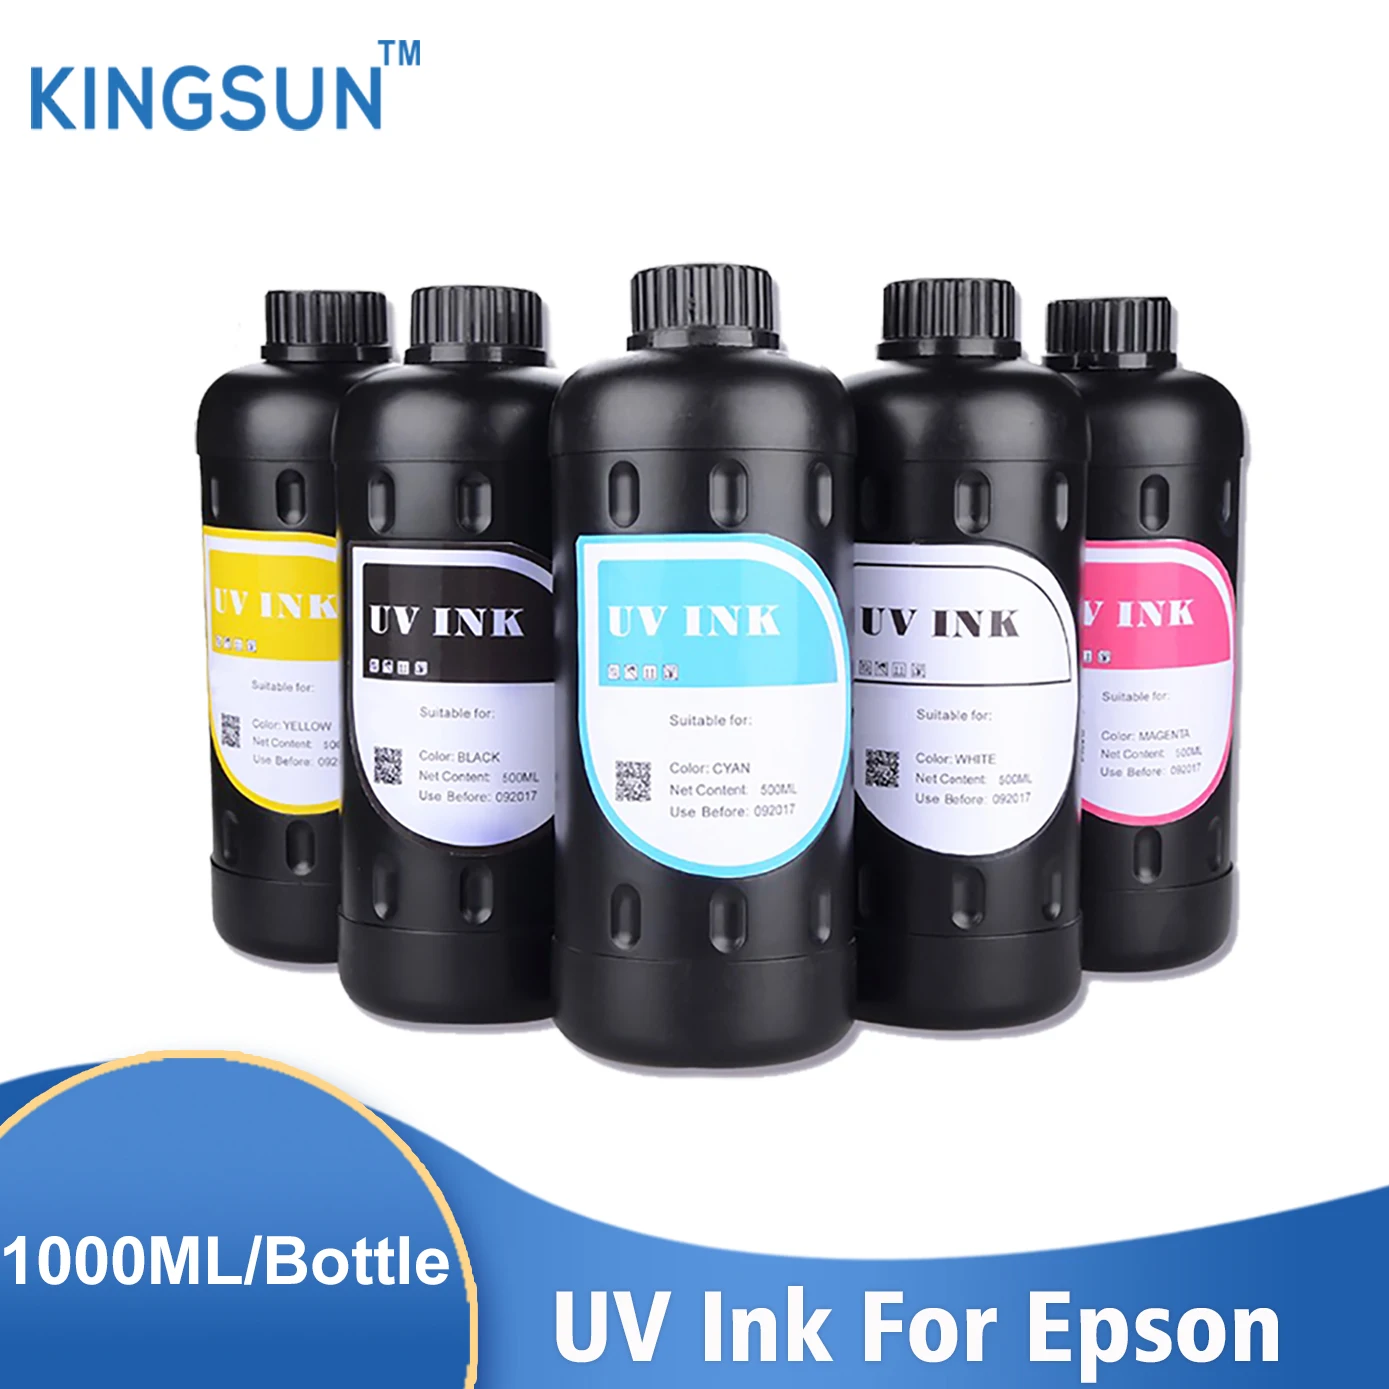 

1000ML/Bottle UV LED Ink For Epson L800 L805 L1800 R290 R330 1390 1400 4800 4880 7800 7880 TX800 XP600 XP300 Inkjet UV Printer